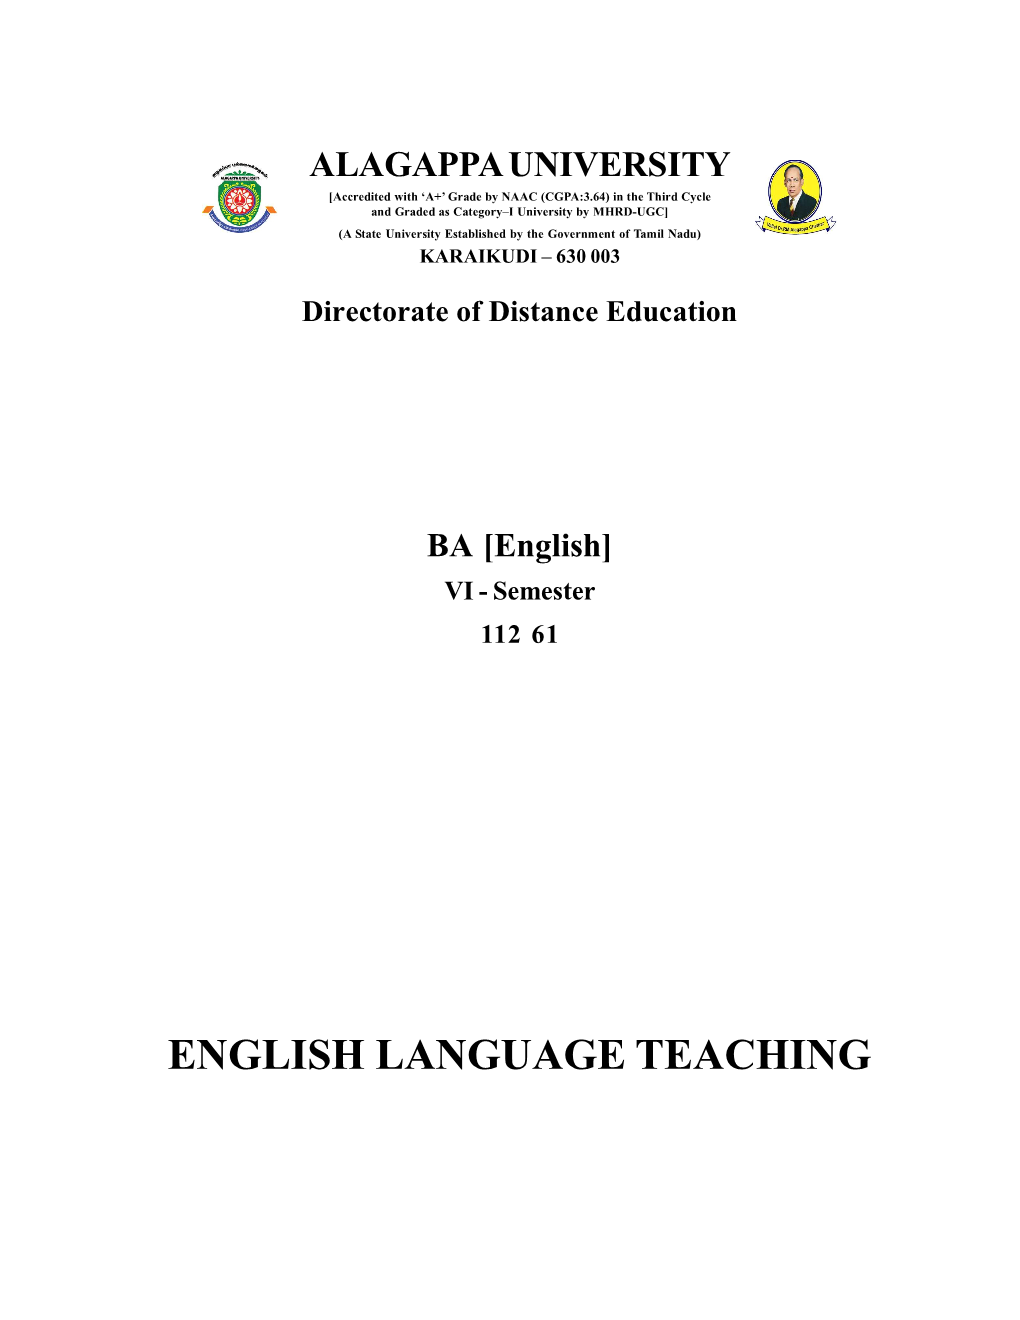 ENGLISH LANGUAGE TEACHING Reviewer Dr